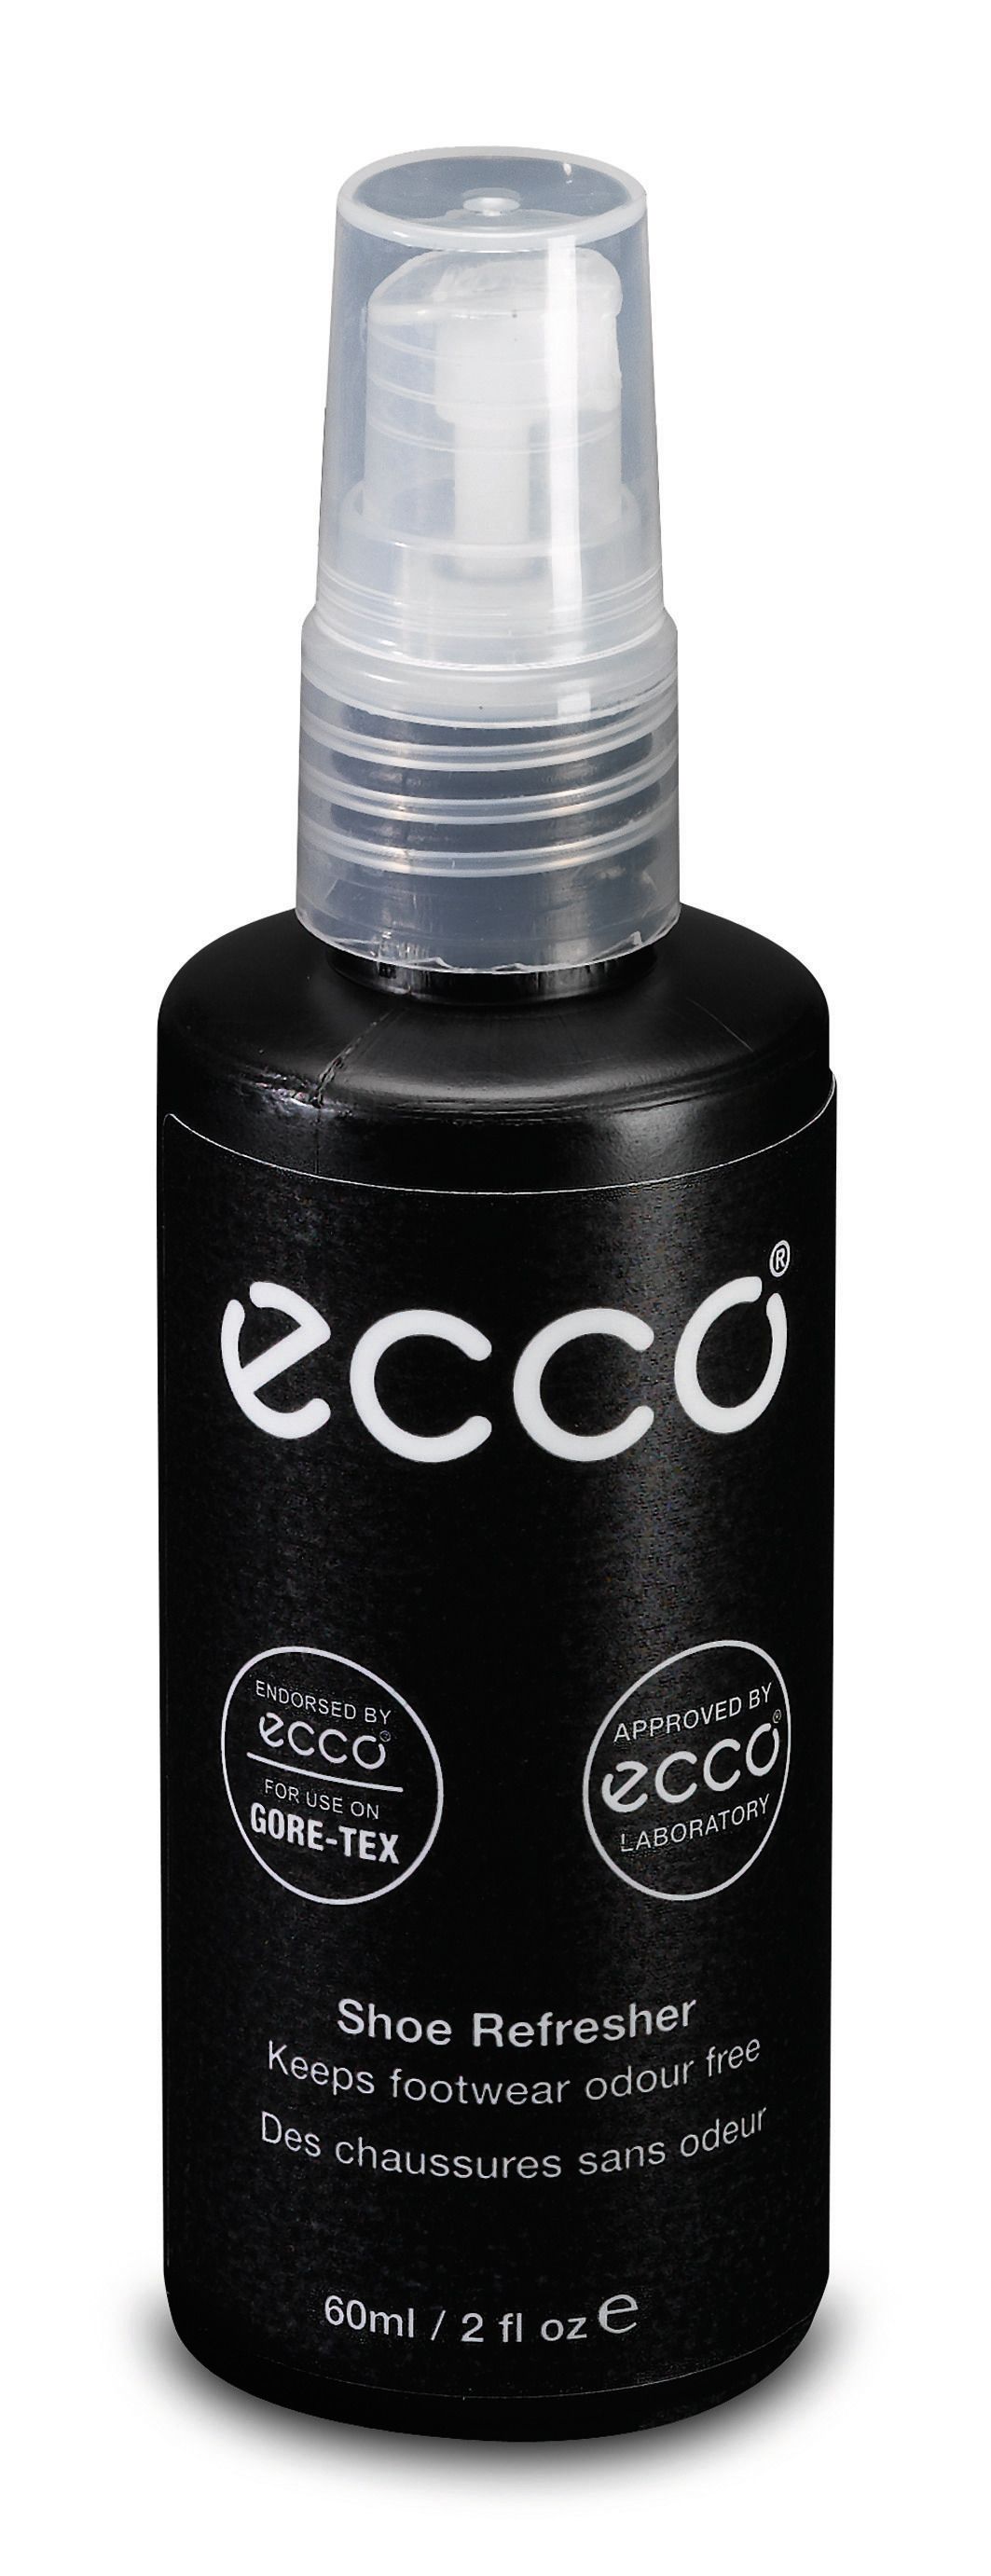 Shoe Refresher Spray - ECCO.com